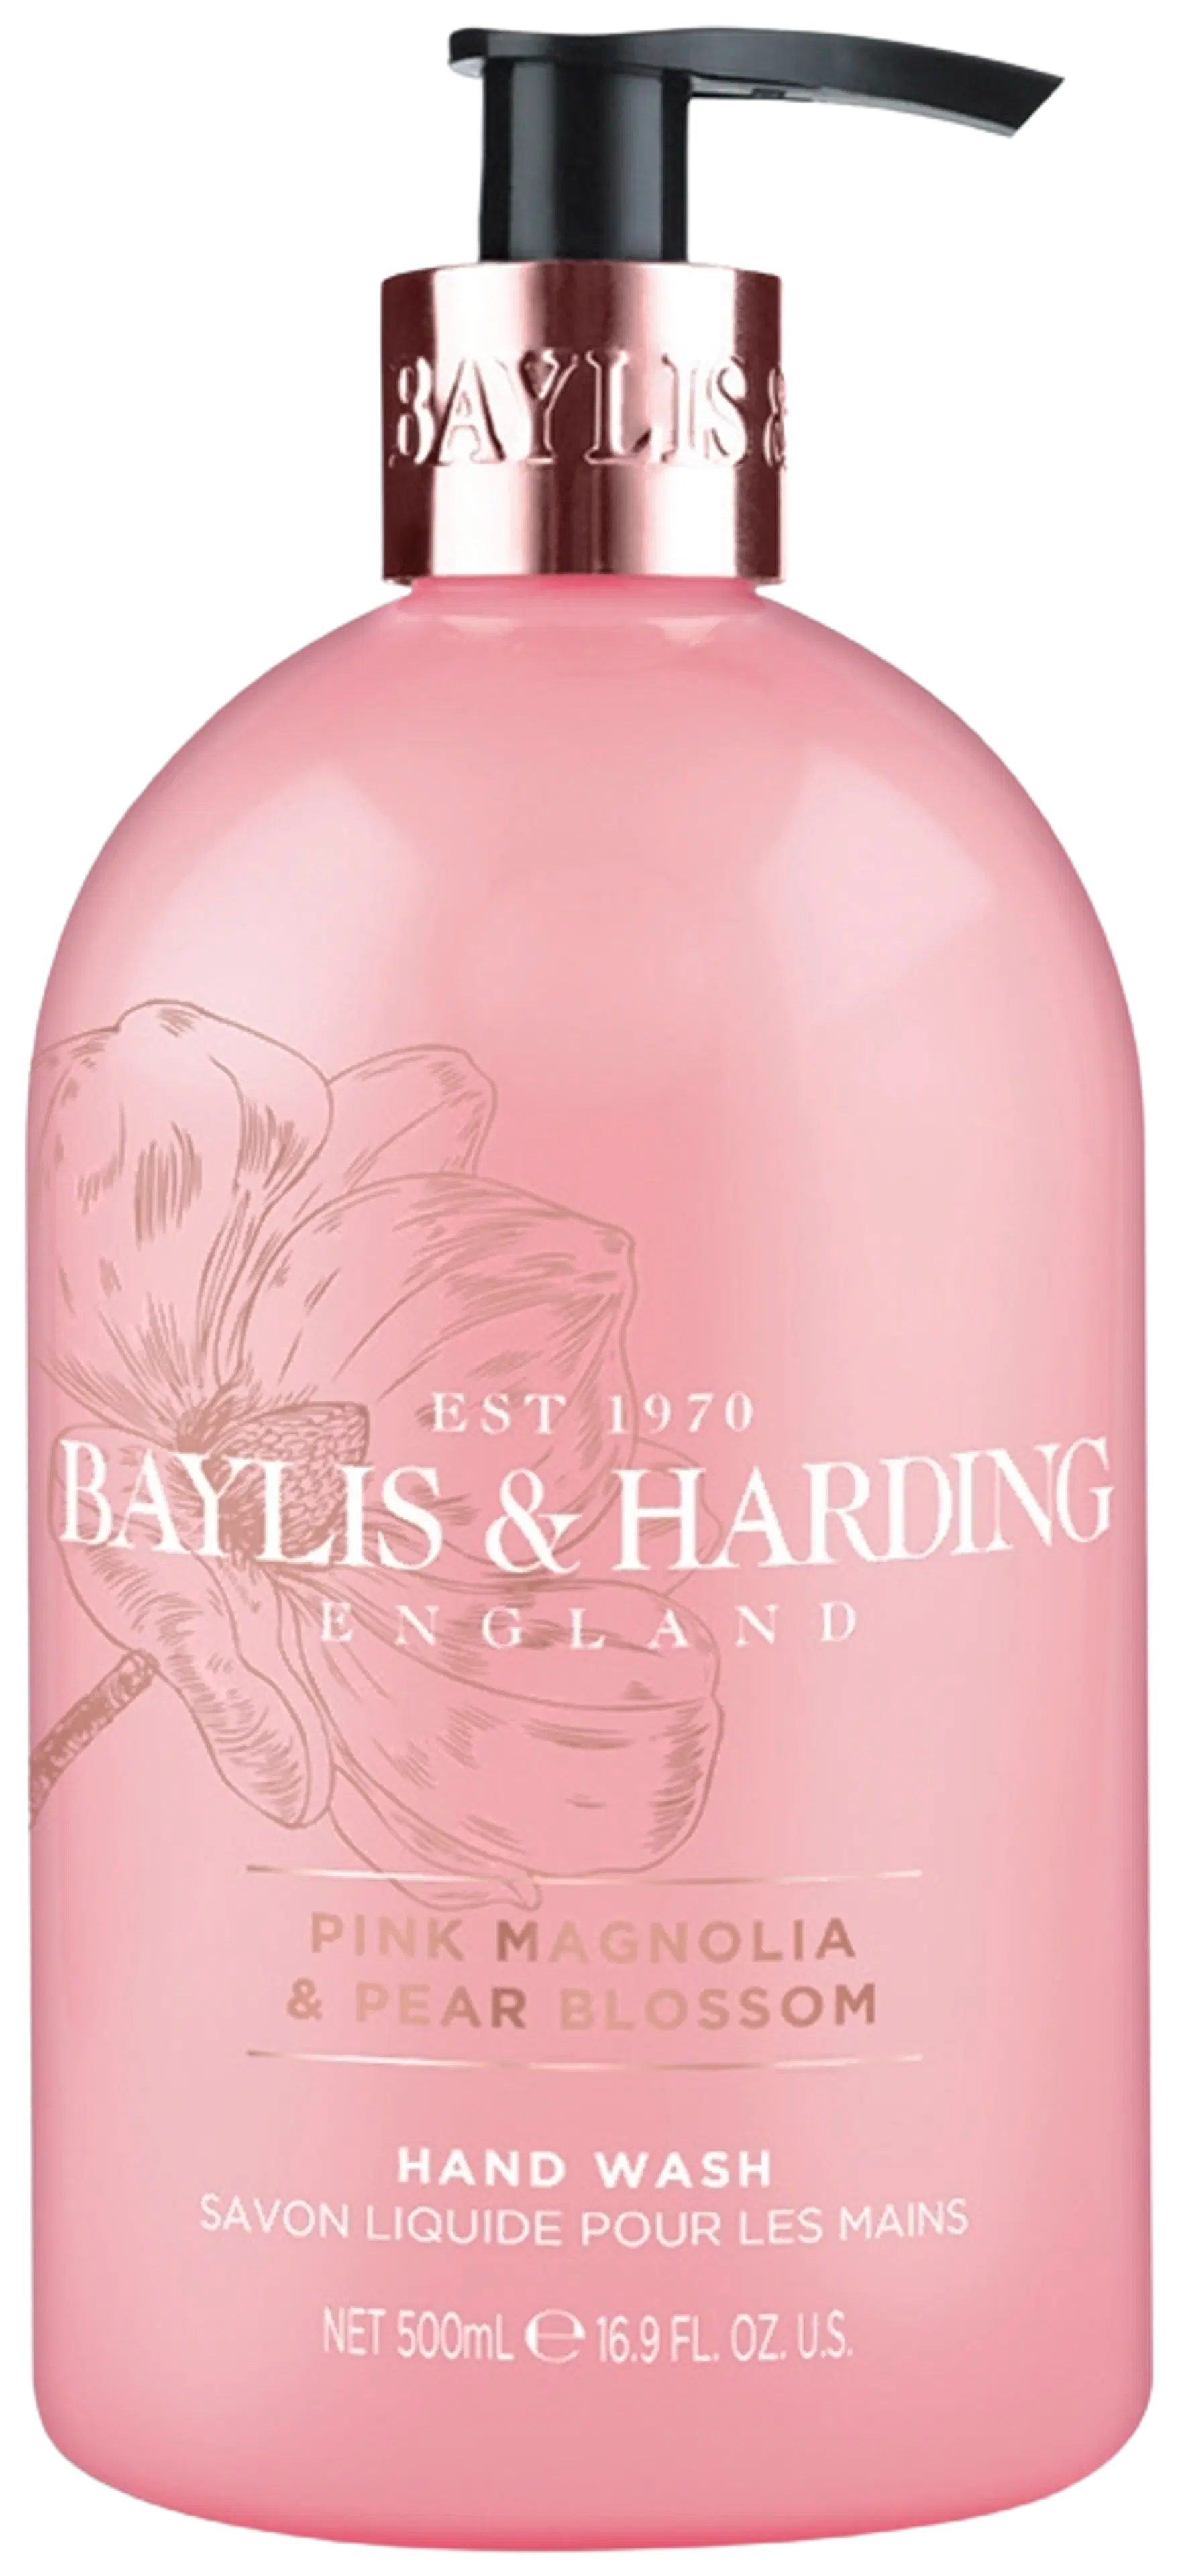 Baylis & Harding Pink Magnolia & Pear Blossom 500ml käsisaippua